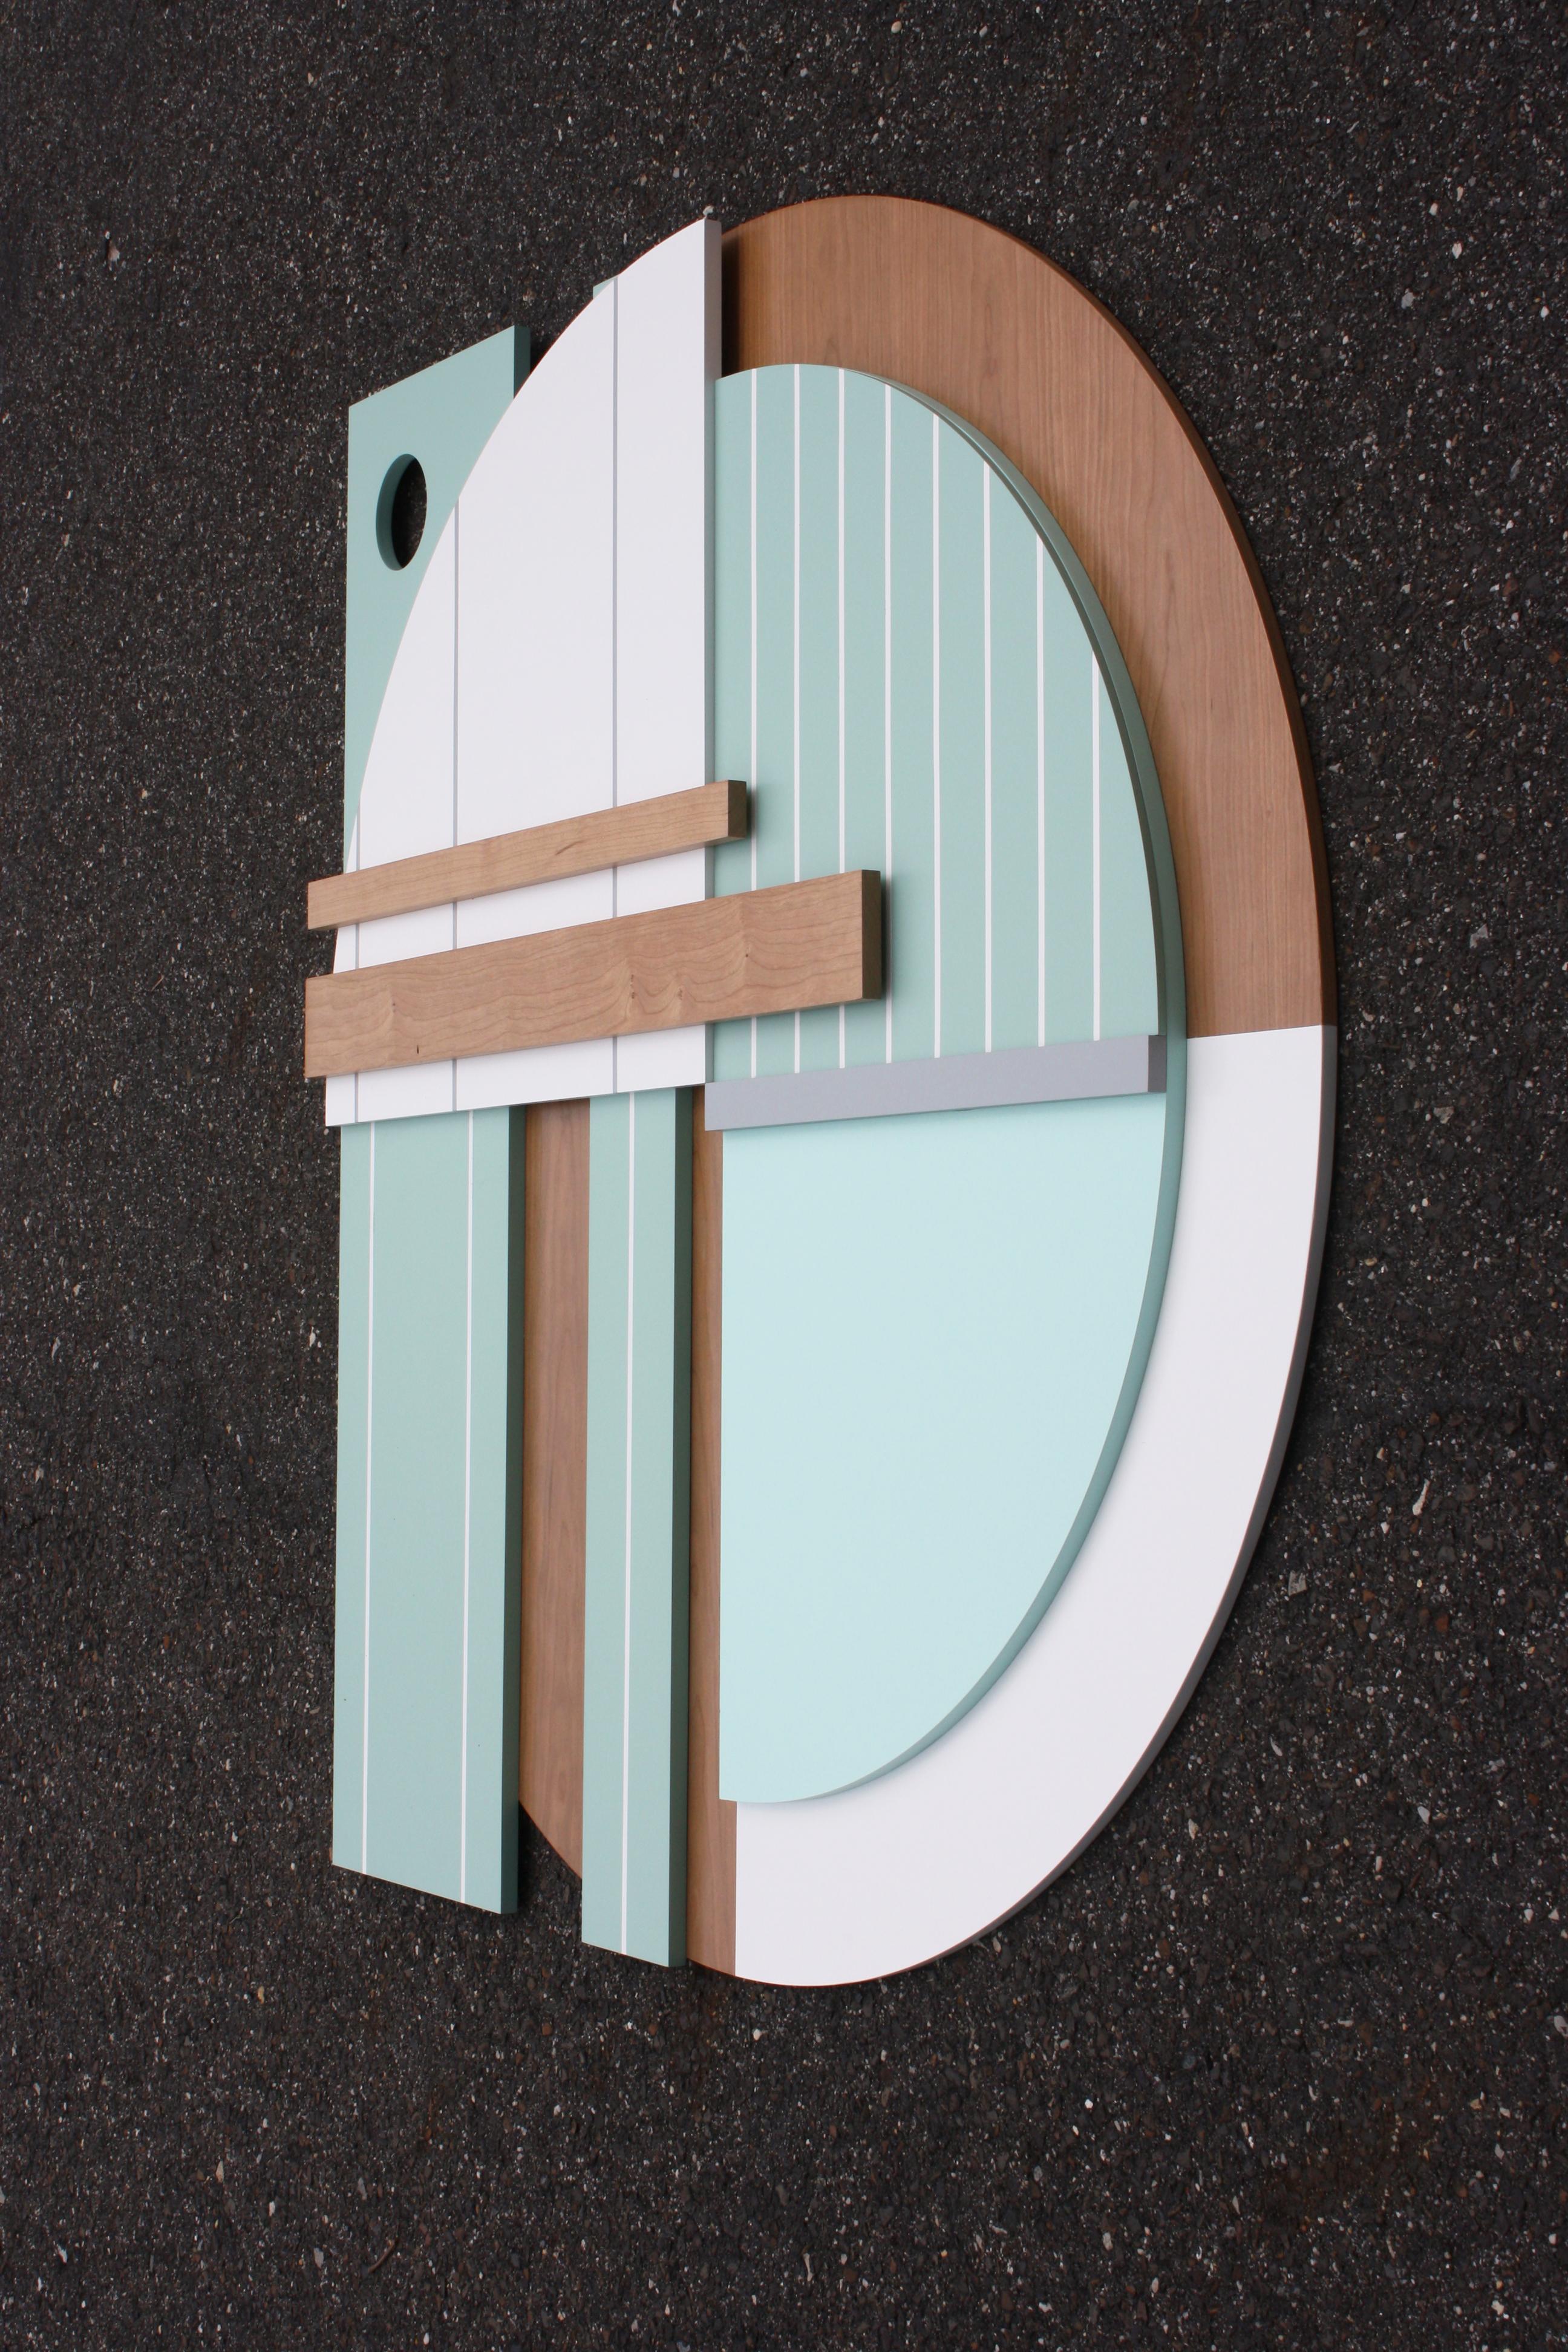 Bauhaus Mint ist eine elegante, moderne, minimalistische, zeitgenössische Wandskulptur. Es besteht aus Birkenpaneelen und einem hochwertigen, pigmentierten Lack mit satinierter Oberfläche. Das Werk basiert auf einer minimalistischen Farbpalette, die